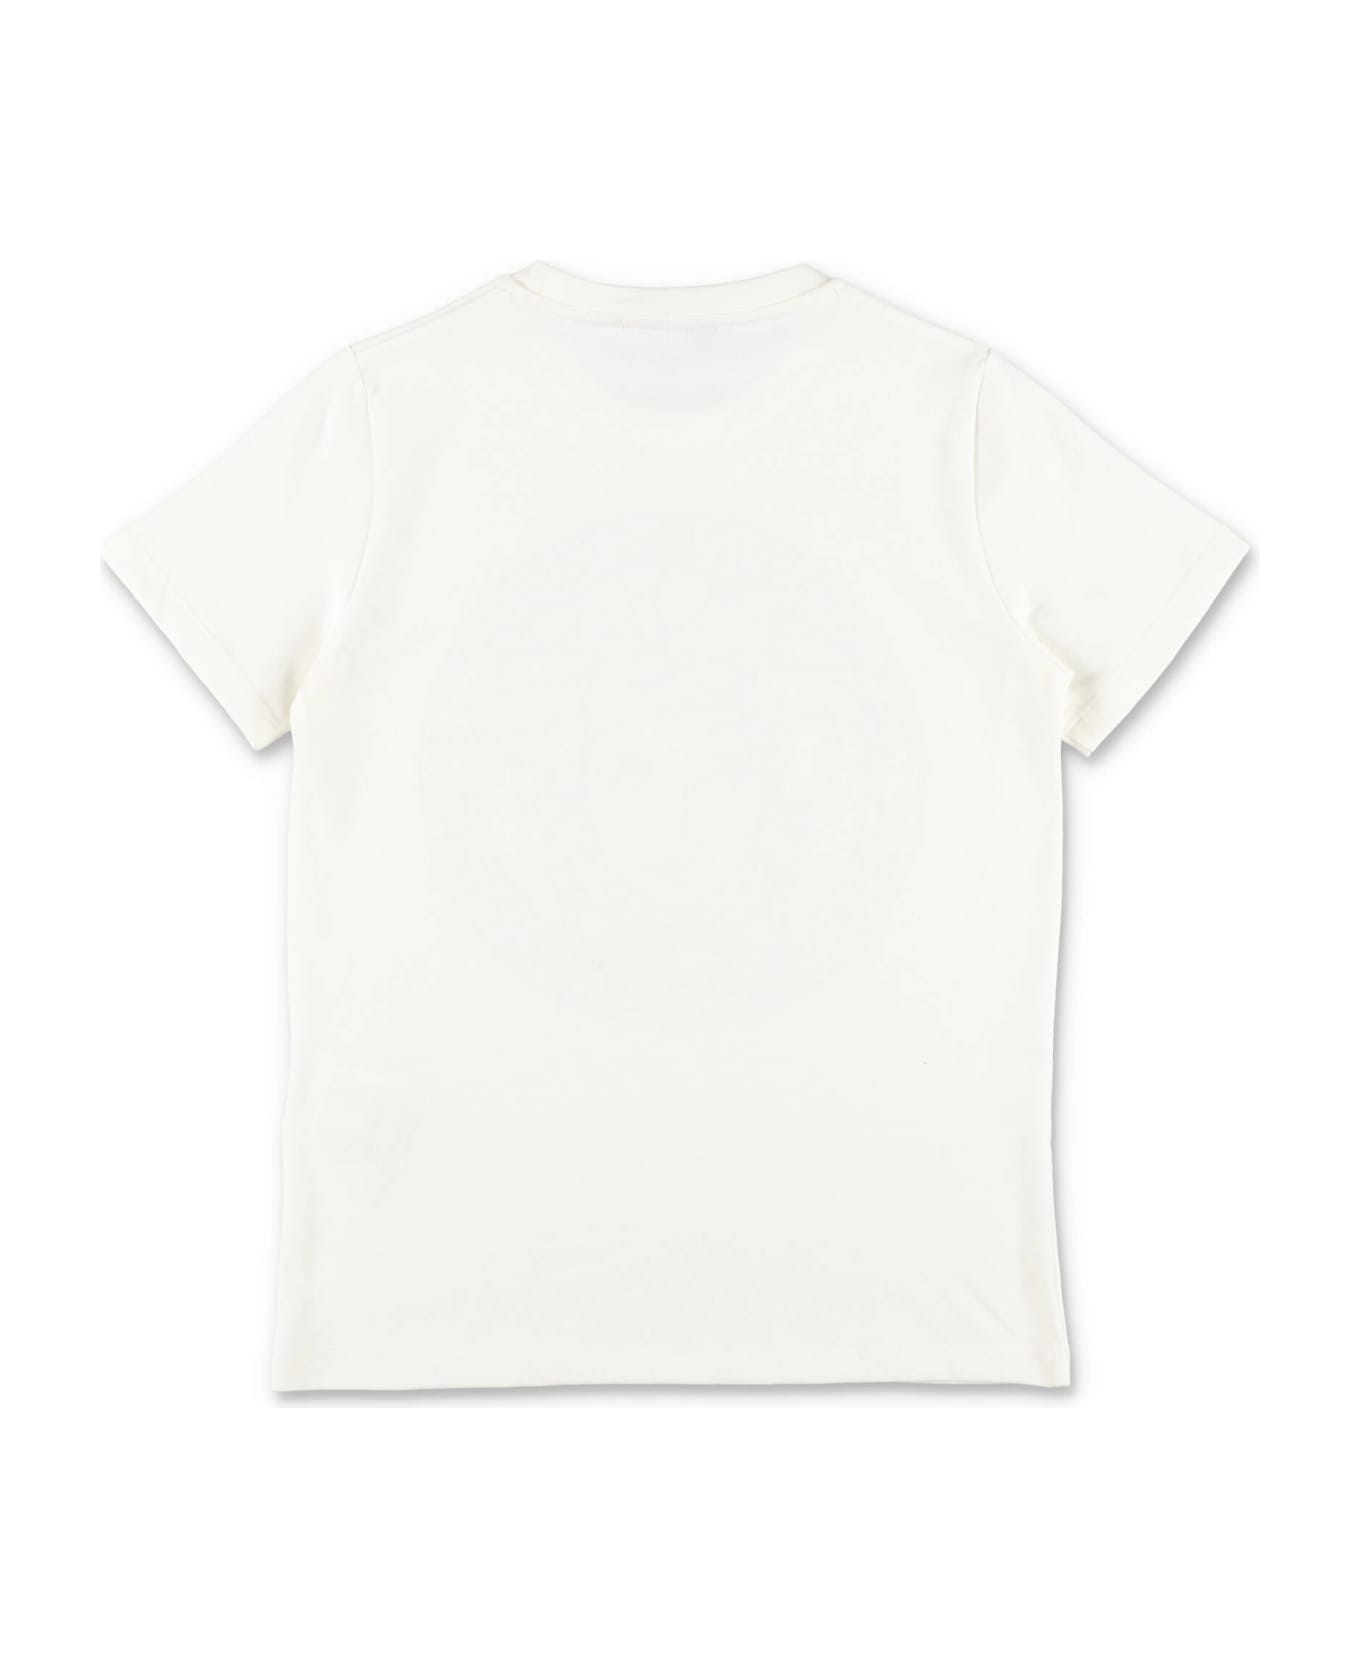 Versace T-shirt Bianca In Jersey Di Cotone Bambino - Bianco